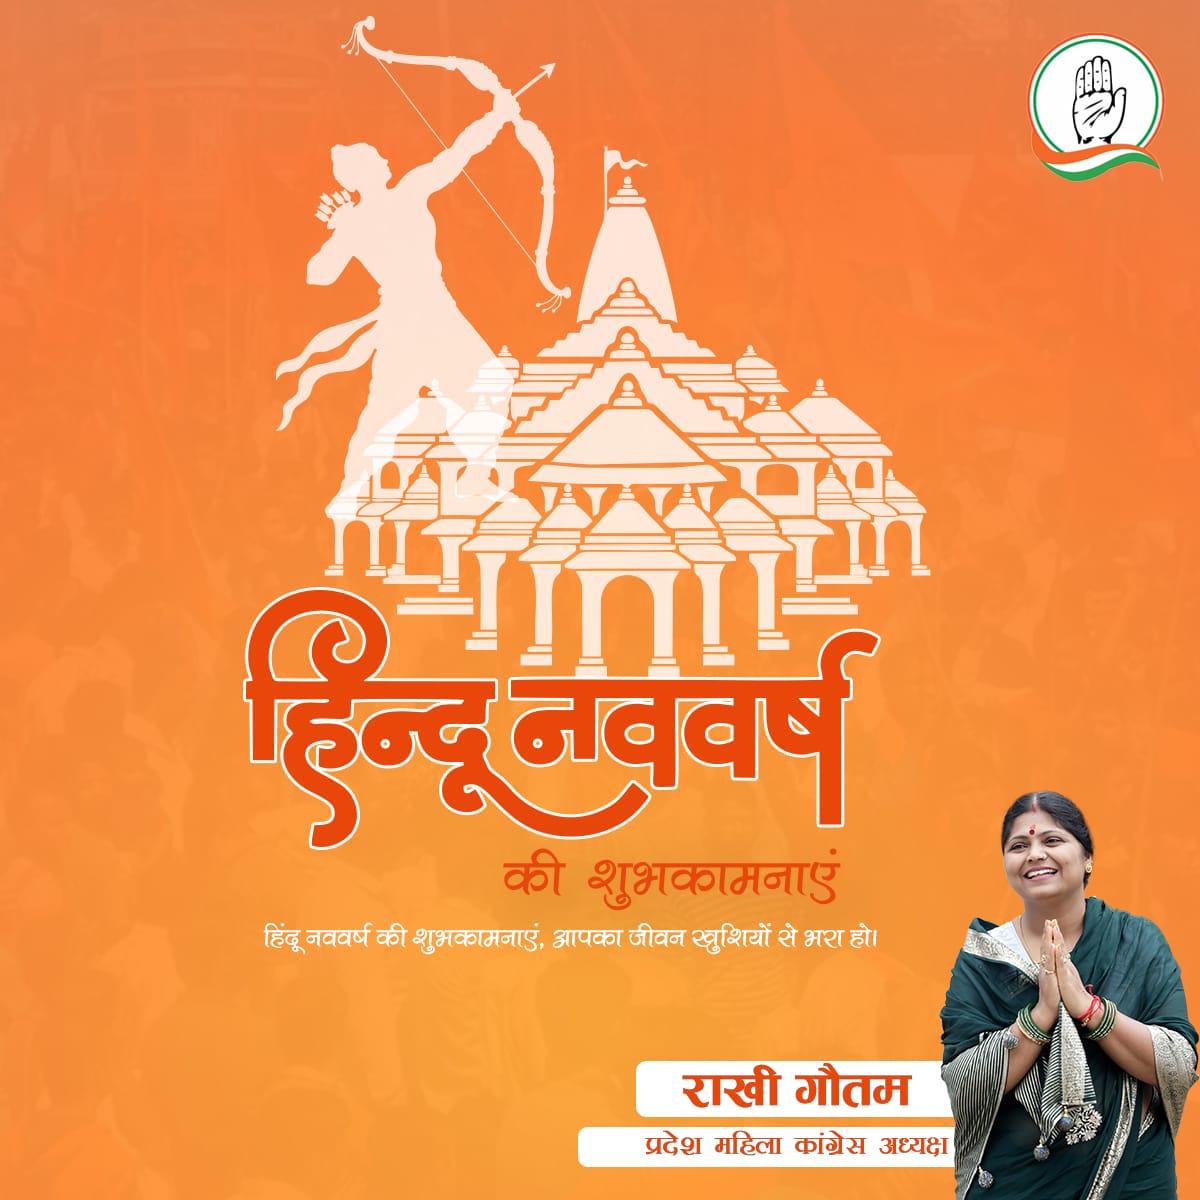 हिन्दू नववर्ष की आप सभी प्रदेशवासियों को हार्दिक शुभकामनाएं ।
#HinduNavVarsh२०८१